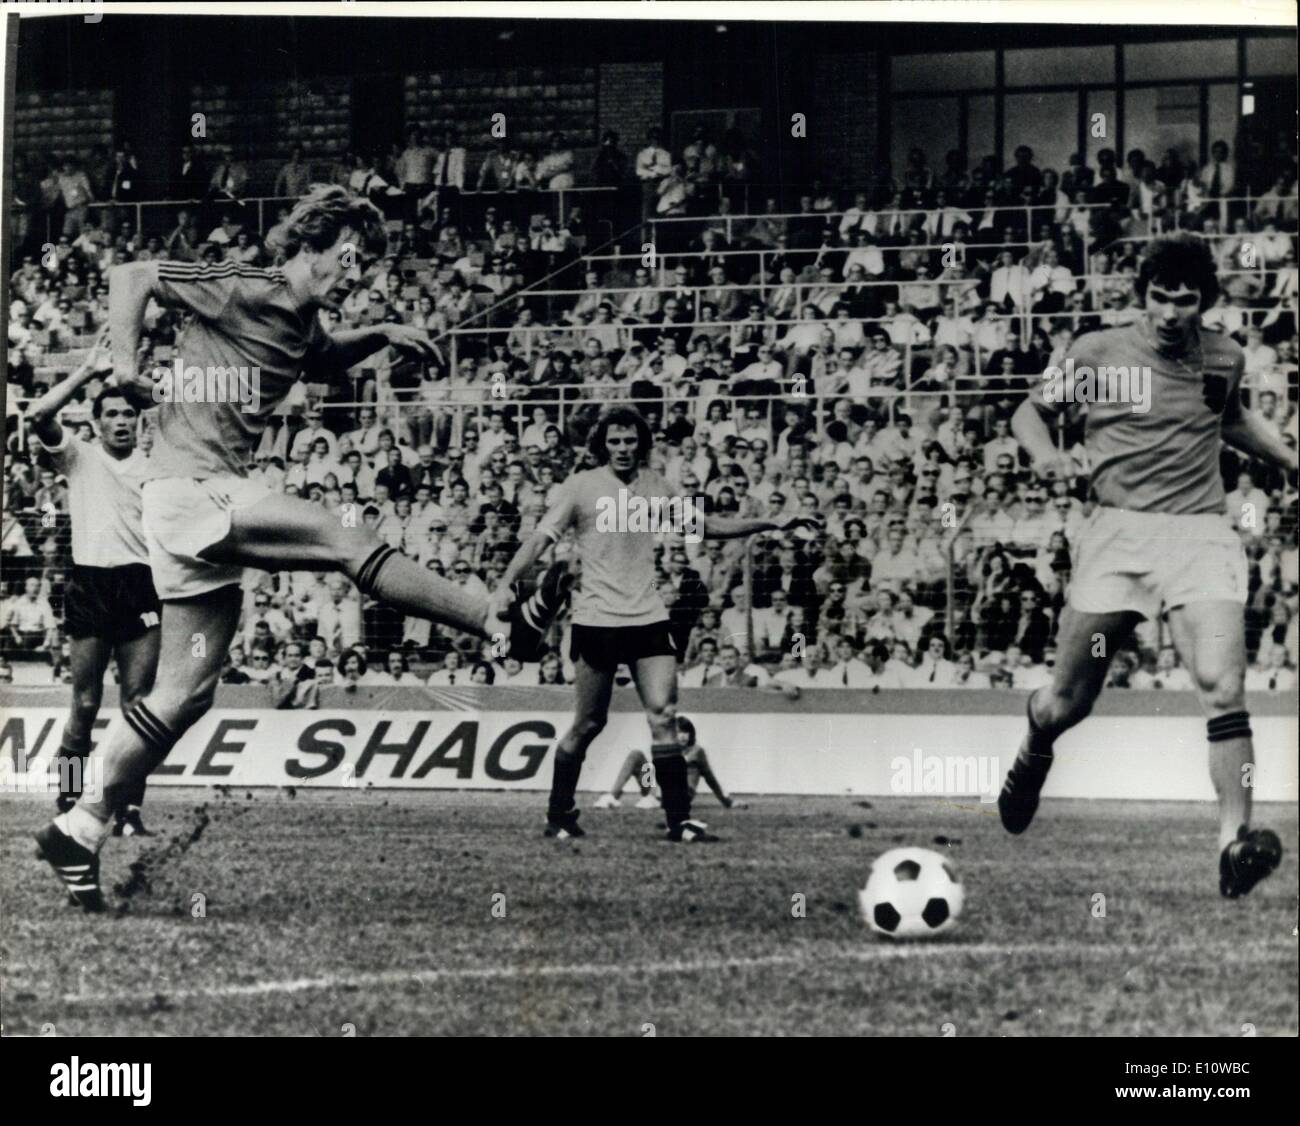 Jun 19, 1974 - Copa Mundial de Fútbol de Alemania. Holland beat Uruguay 2-0. Foto: Johnny Rep (izquierda) visto gol de Holanda durante su victoria de 2-0 sobre Uruguay, en el partido de la Copa del Mundo el sábado. H/Keystone Foto de stock